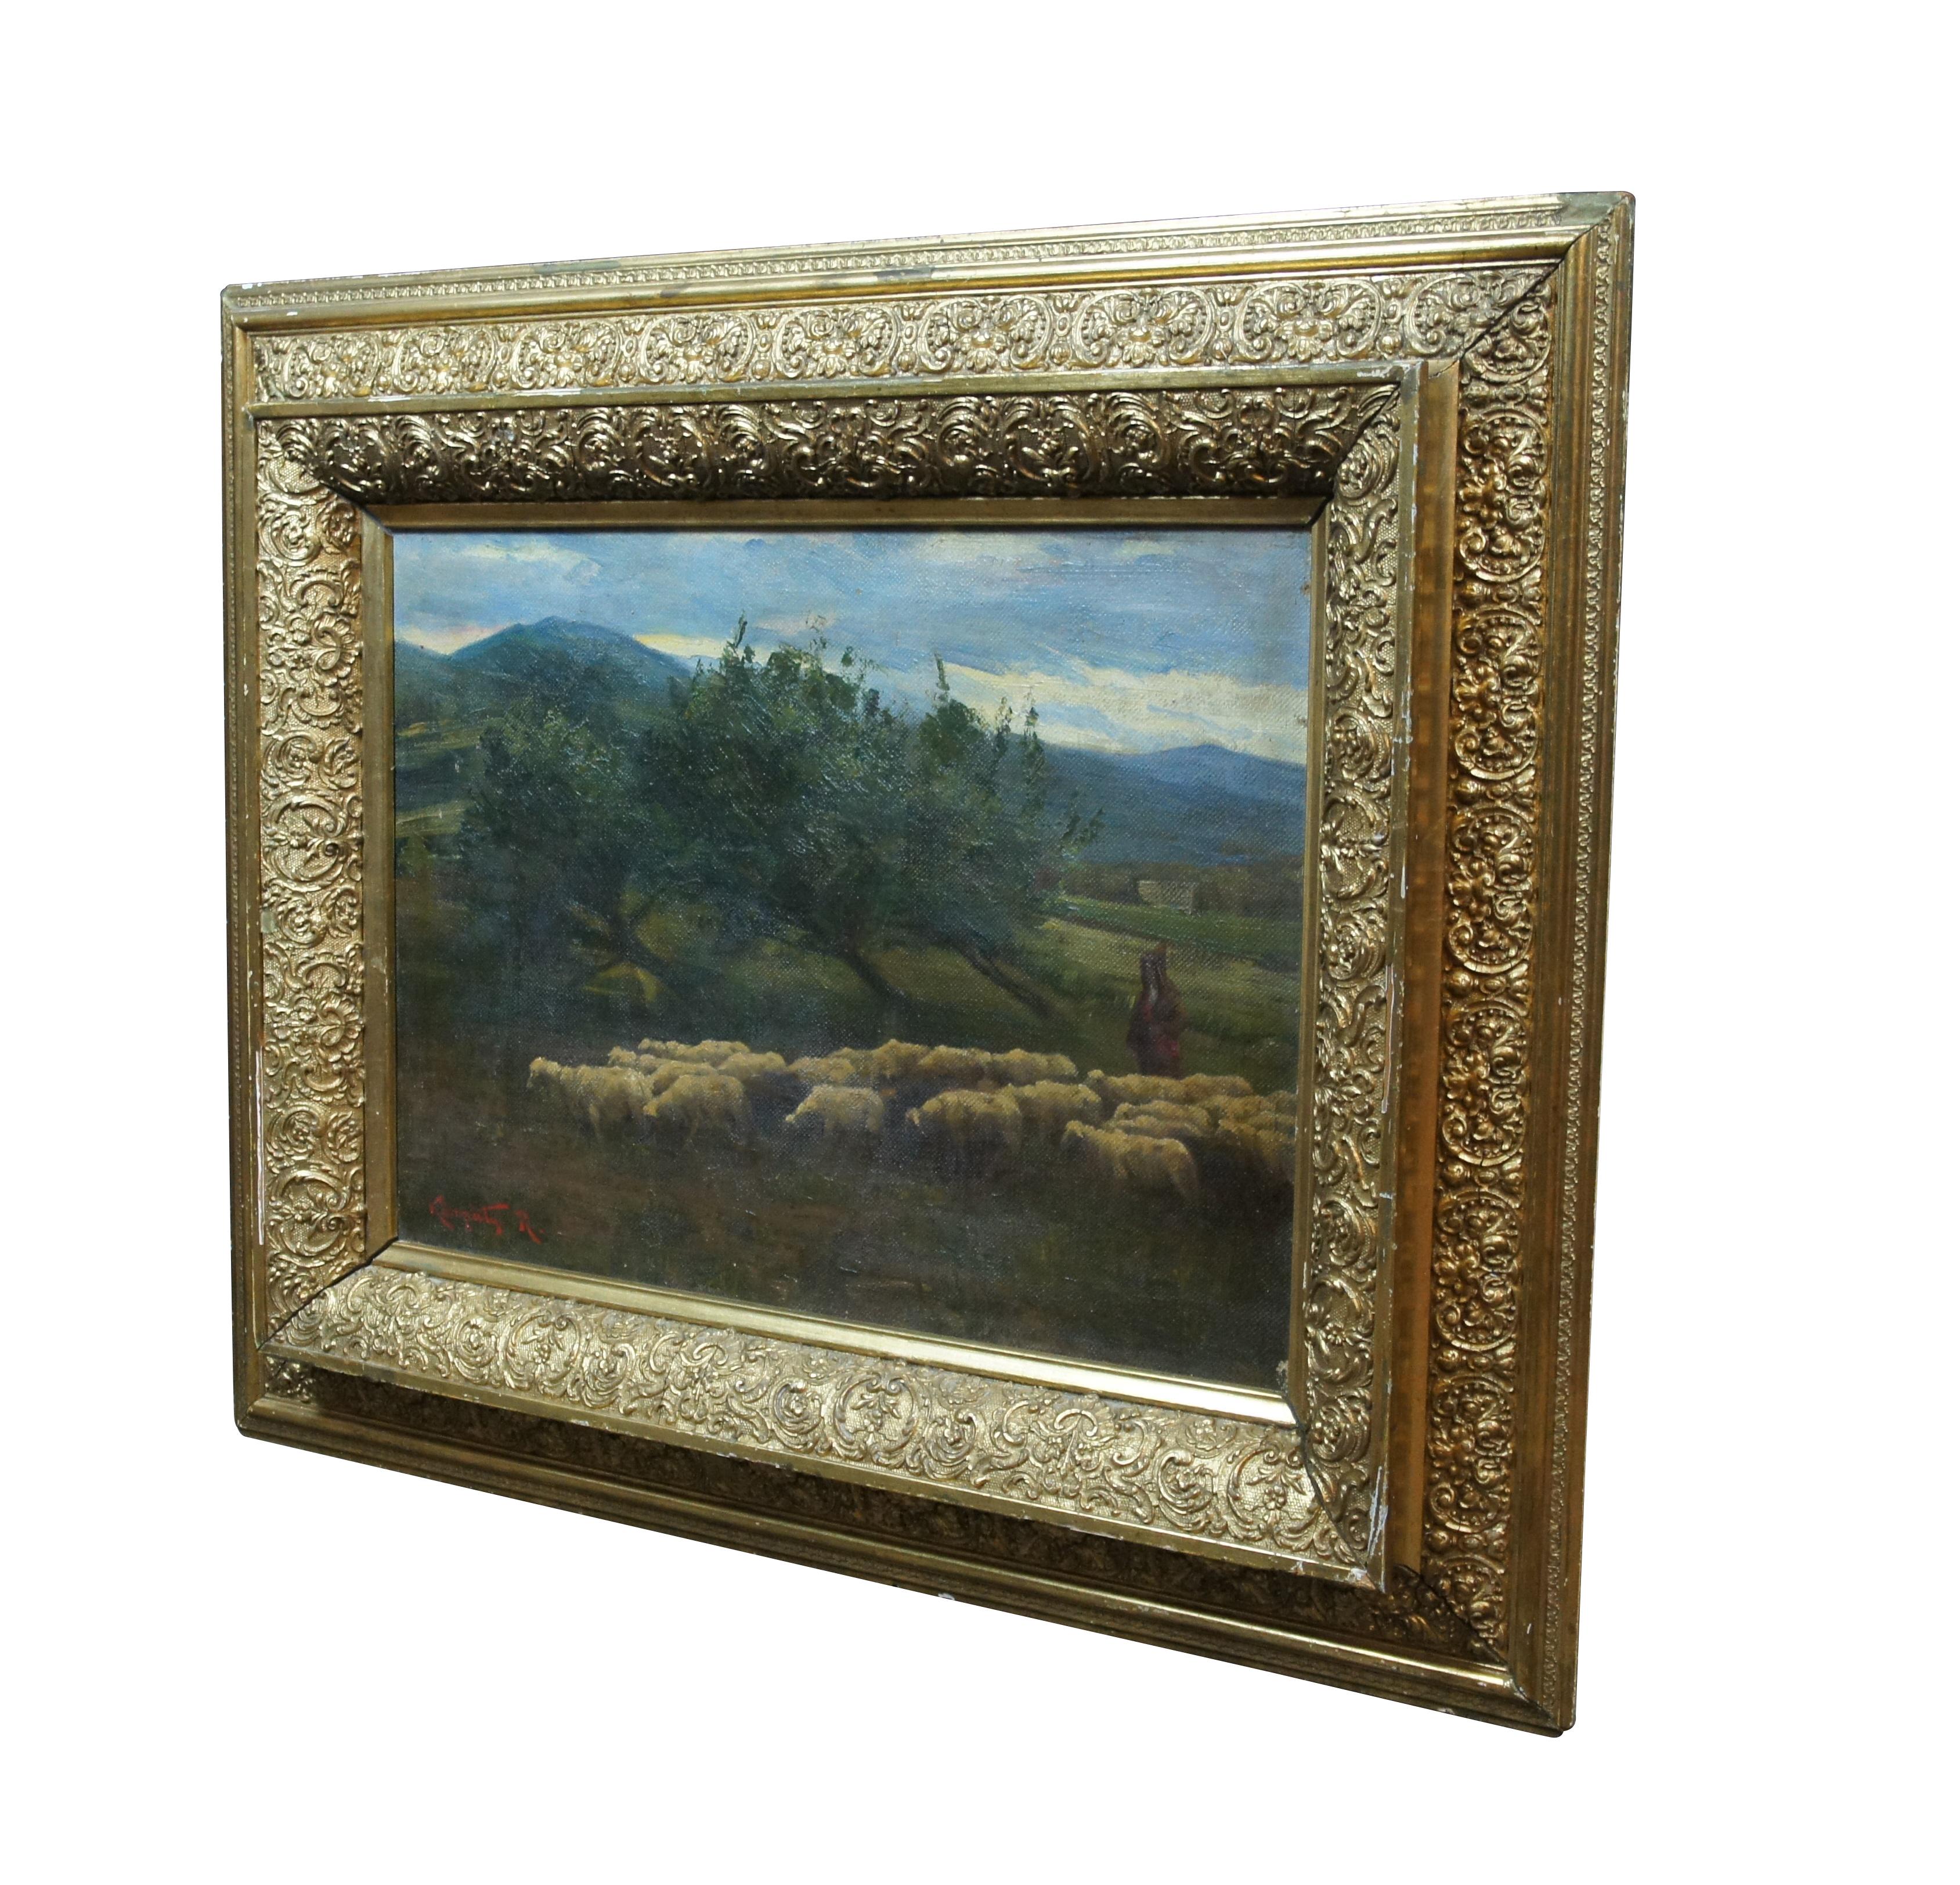 Gemälde von Rezső Kárpáty in Öl auf Leinwand aus dem späten 19. und frühen 20. Zeigt eine malerische Berglandschaft, in deren Mittelpunkt ein Hirte mit Kapuze und seine Herde stehen, die vor einem Baumbestand spazieren gehen. Der doppelschichtige